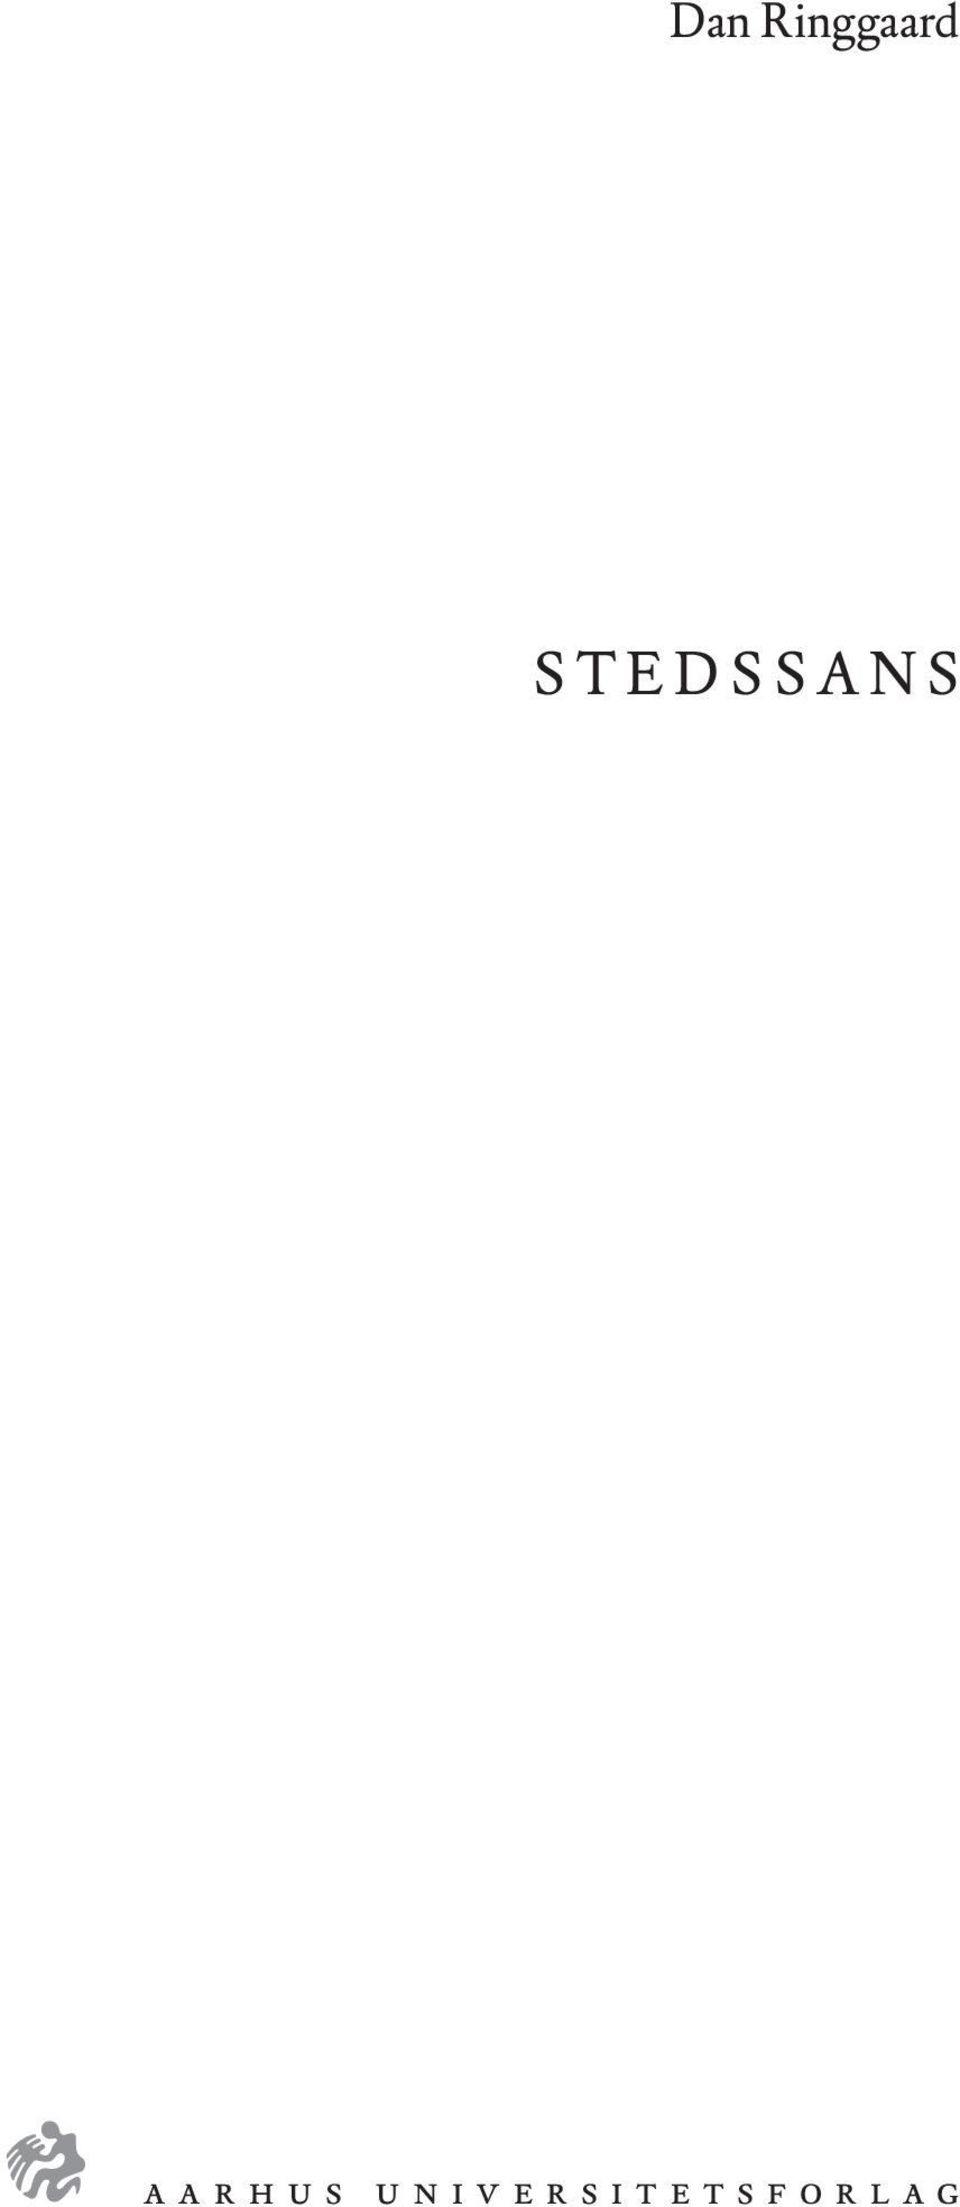 STEDSSANS a